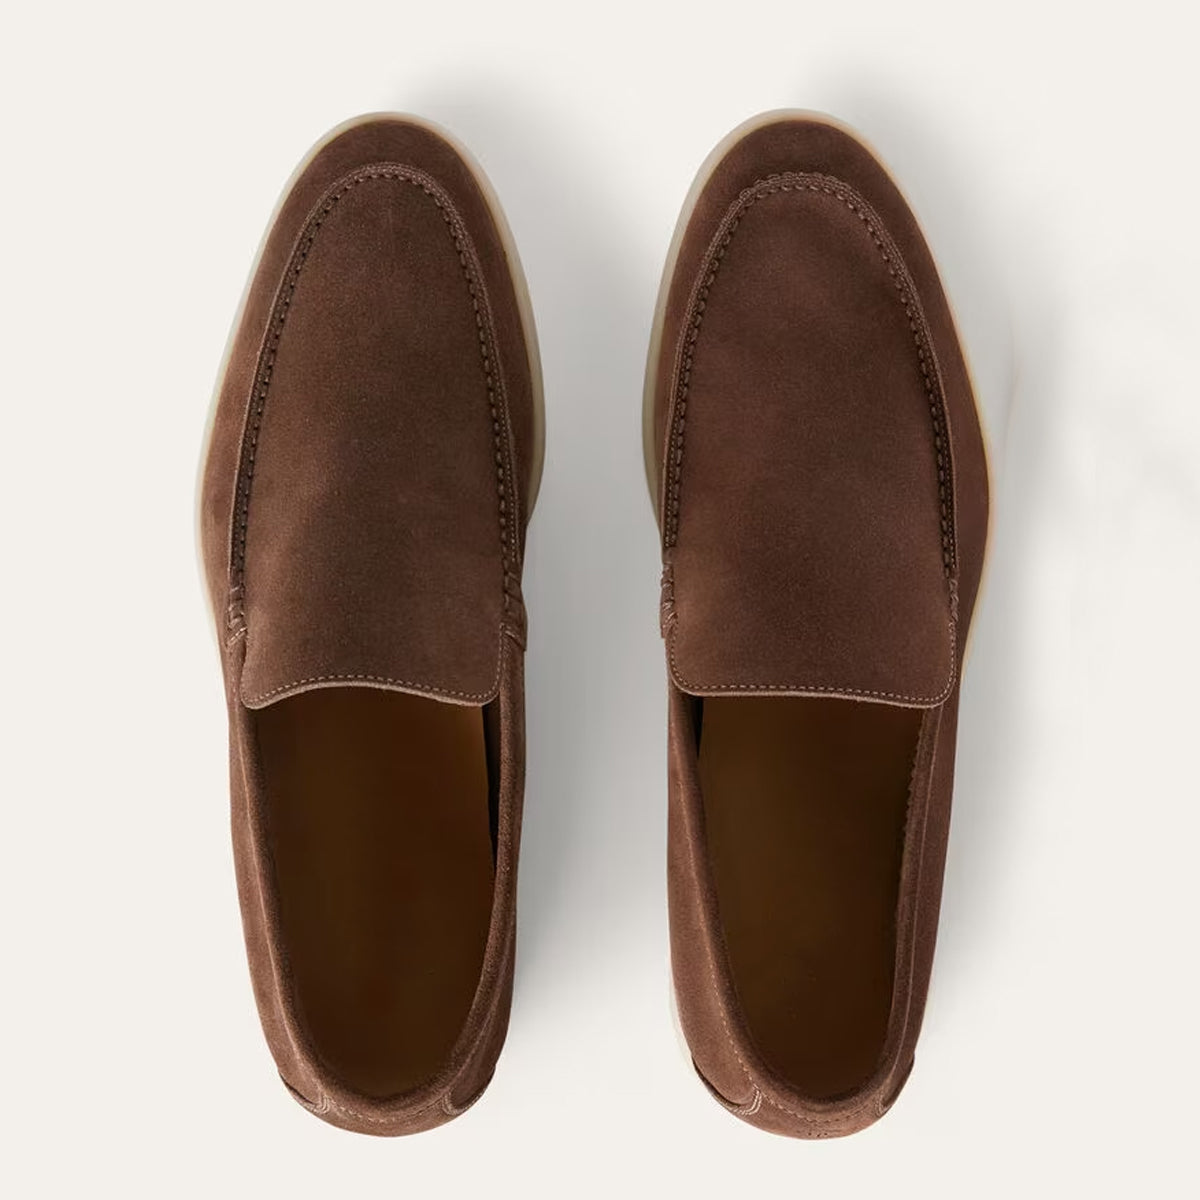 Men's Comfort Driven Old Money Style Trendiest Loafers